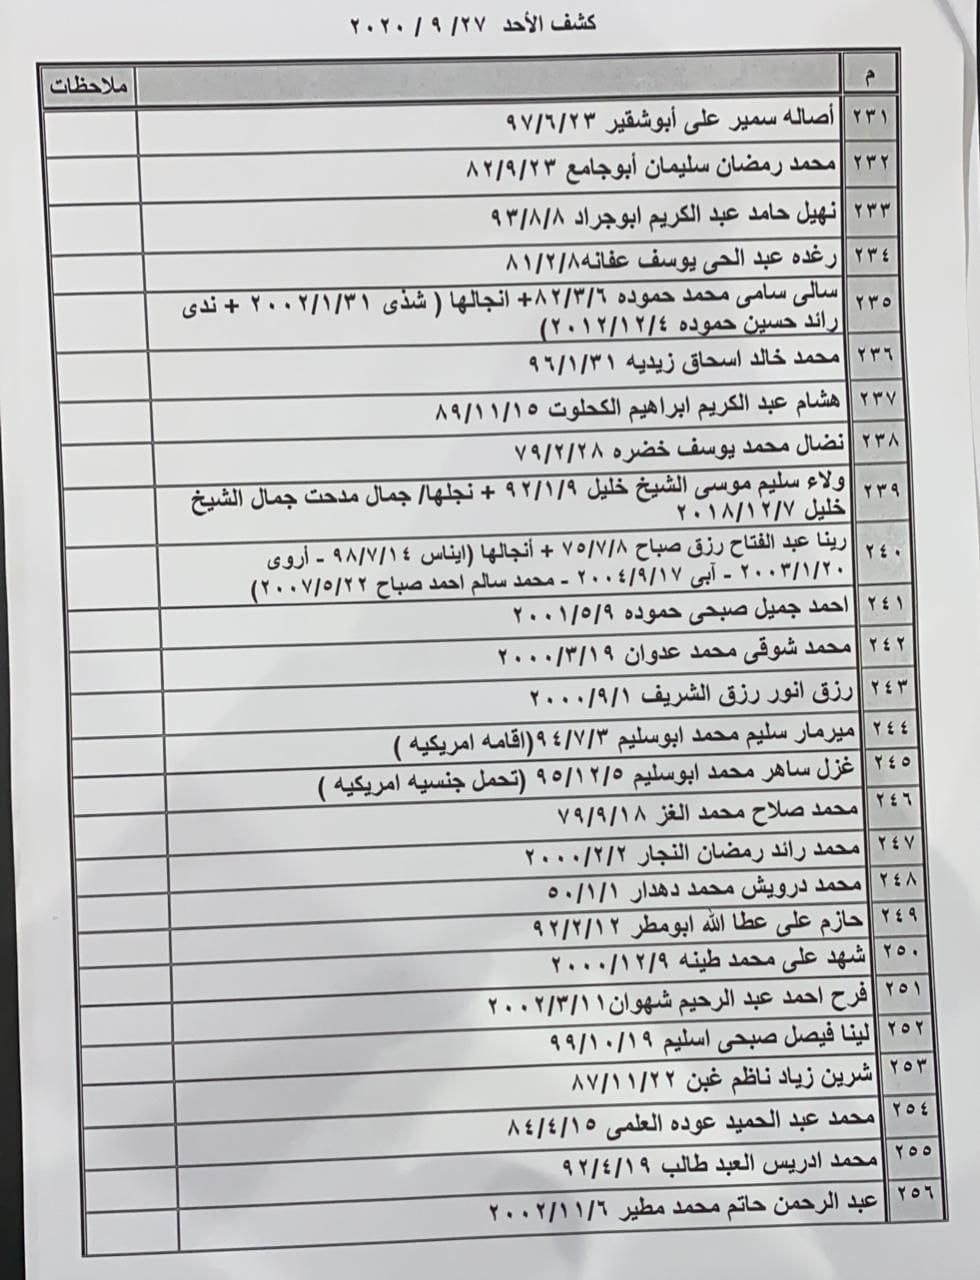 صورة: ملحق آخر لكشف "التنسيقات المصرية" للمسافرين عبر معبر رفح